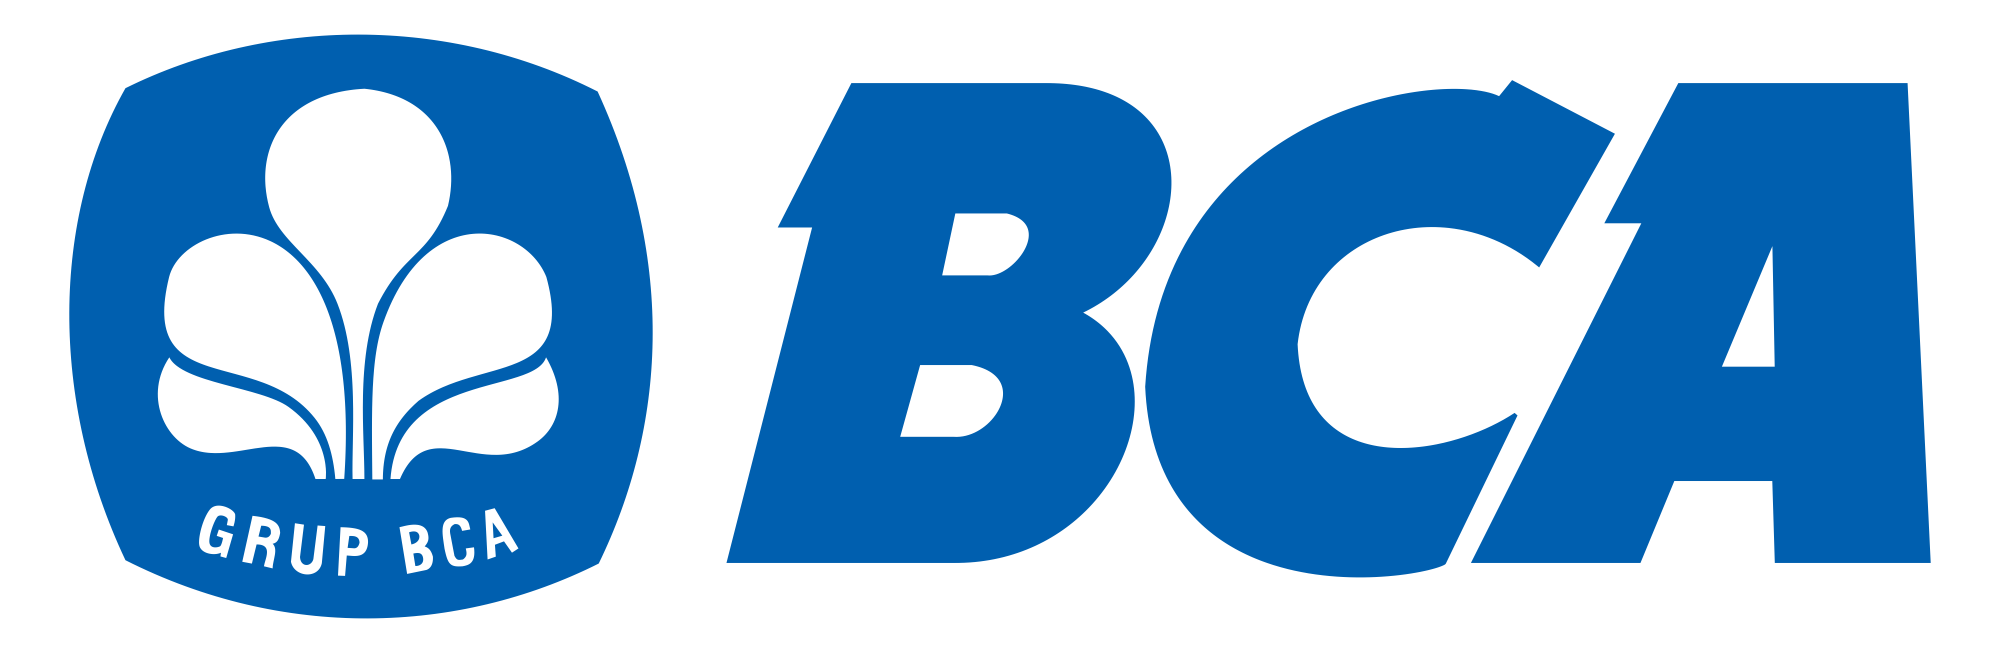 bank-bca-vector-logo